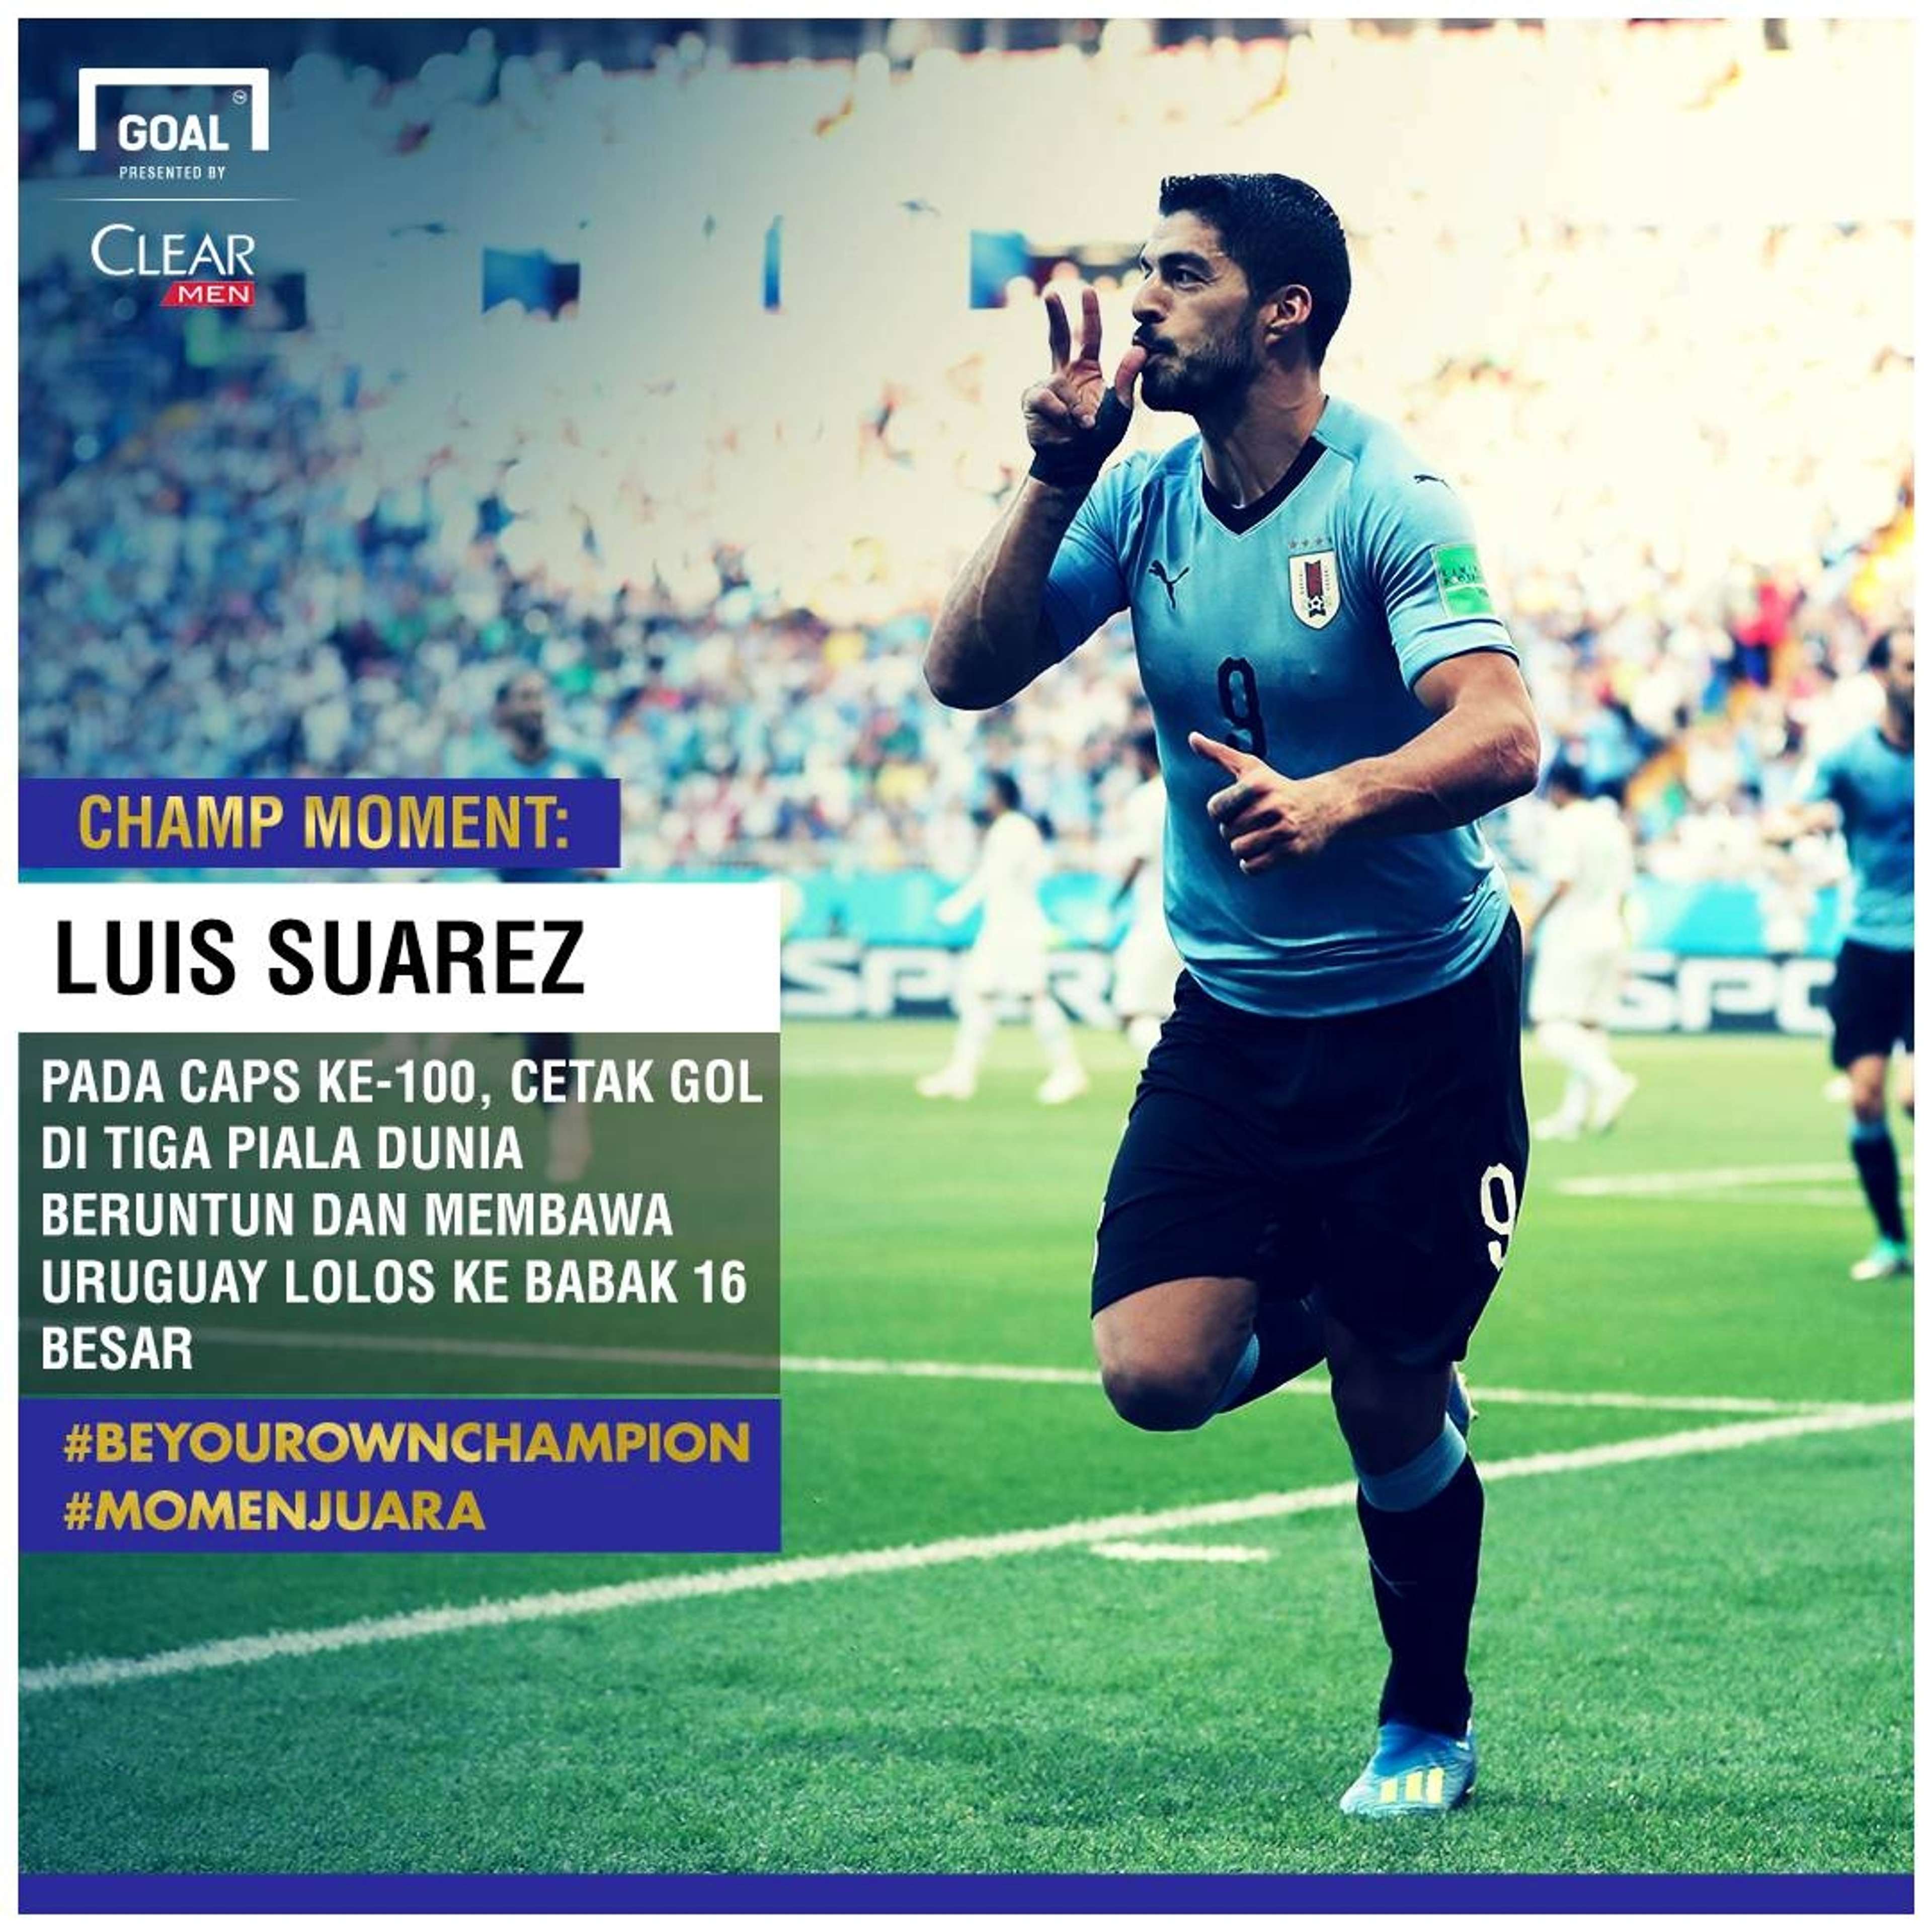 Champ Moment: Luis Suarez